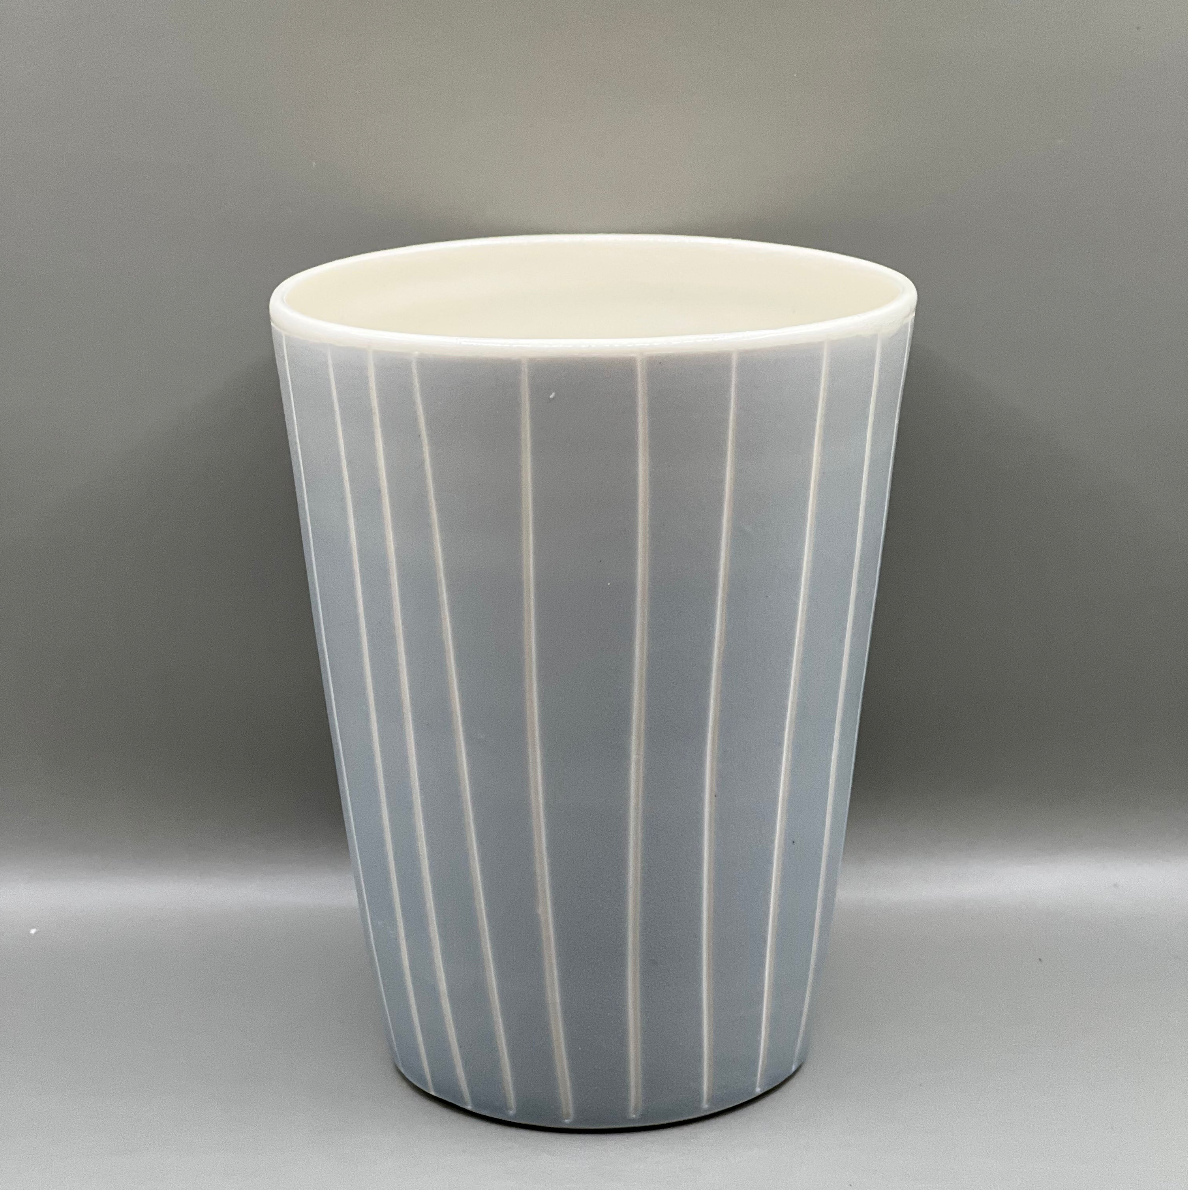 Kop / Hvide striber / Keramik